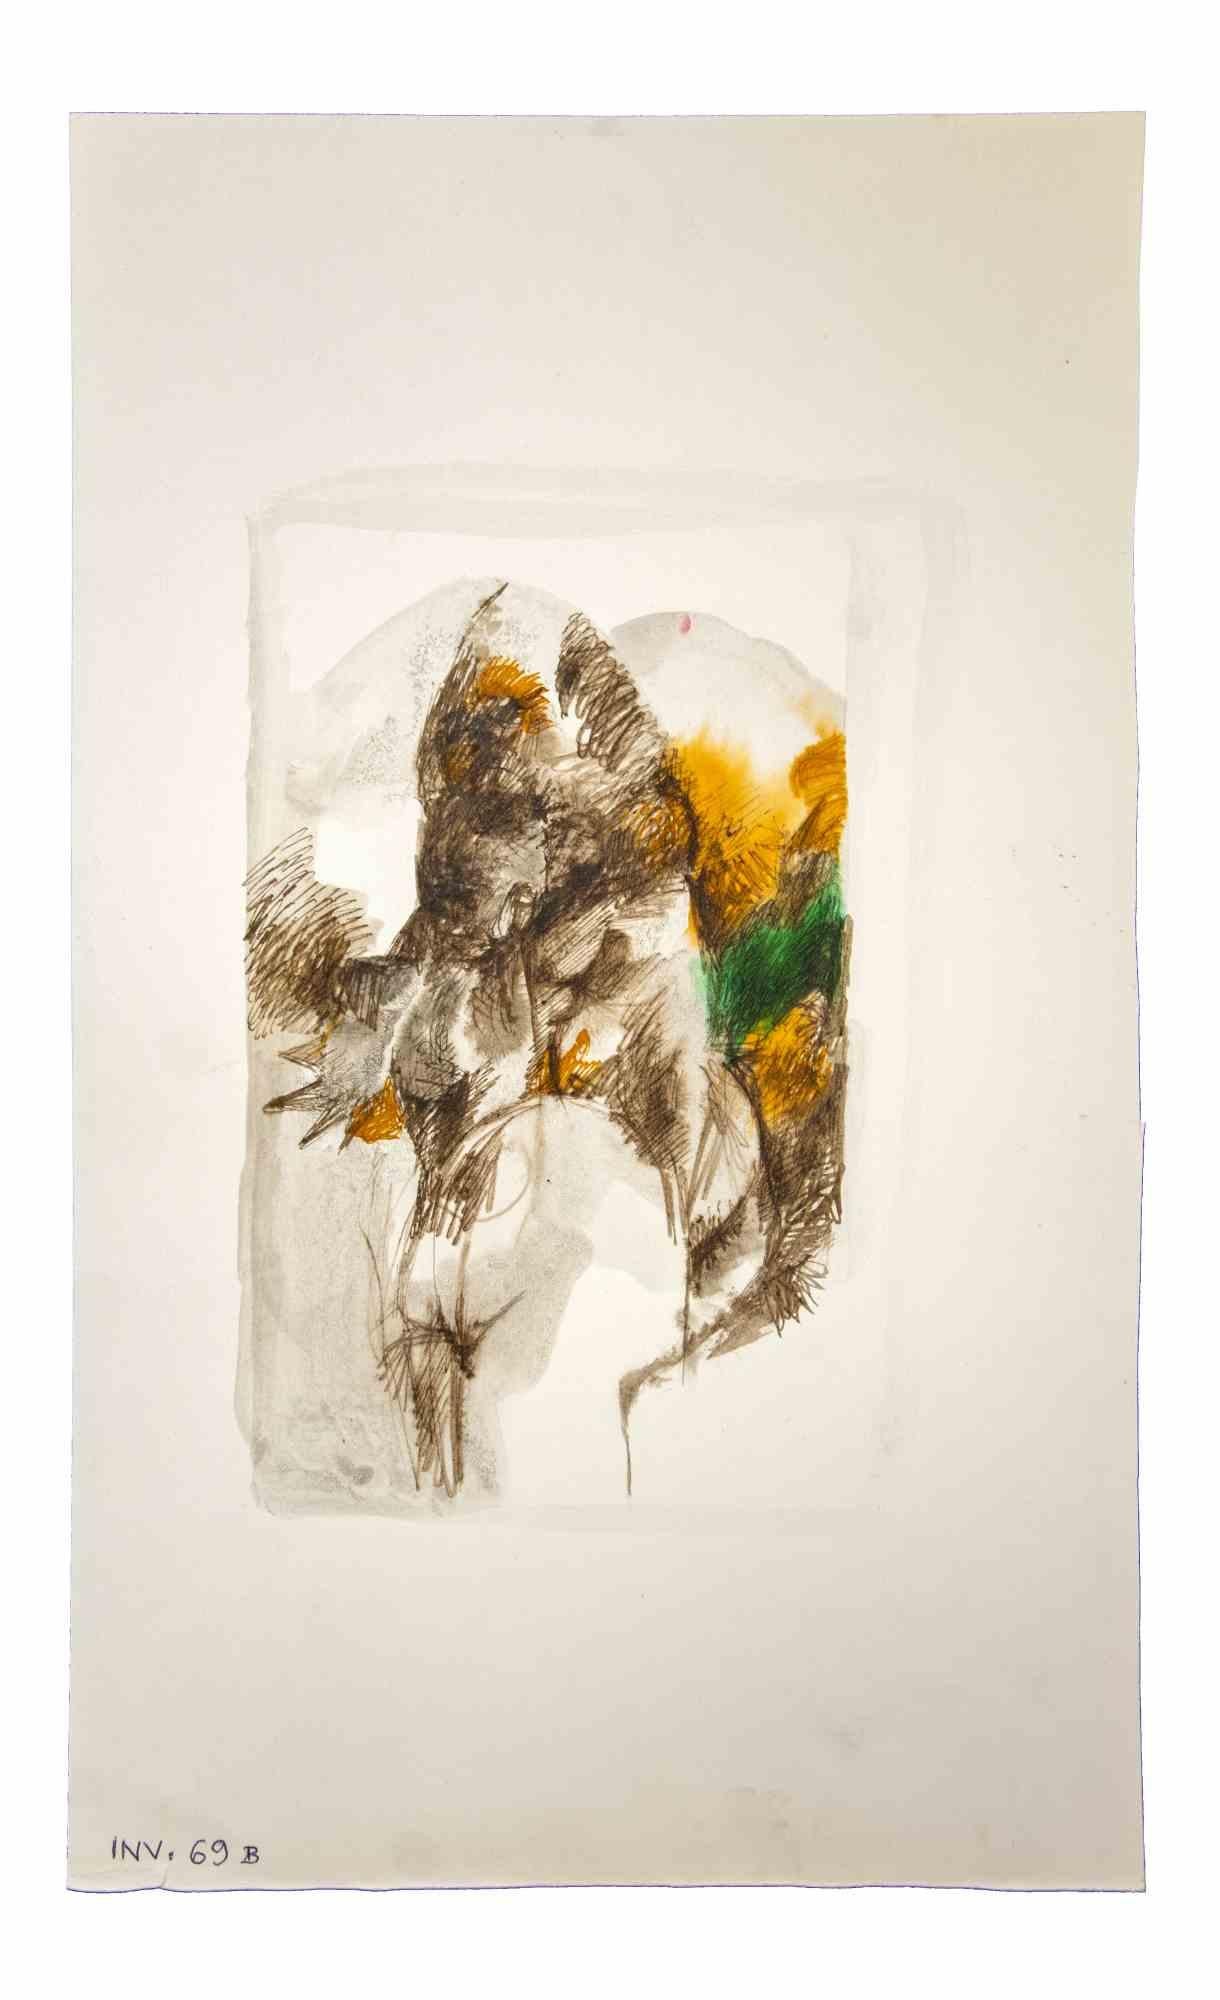 Composition ist ein Original-Kunstwerk, das in den 1970er Jahren von dem italienischen zeitgenössischen Künstler  Leo Guida  (1992 - 2017).

Originalzeichnungen in Porzellantusche und Aquarell auf Papier.

Guter Zustand, aber gealtert.

Das